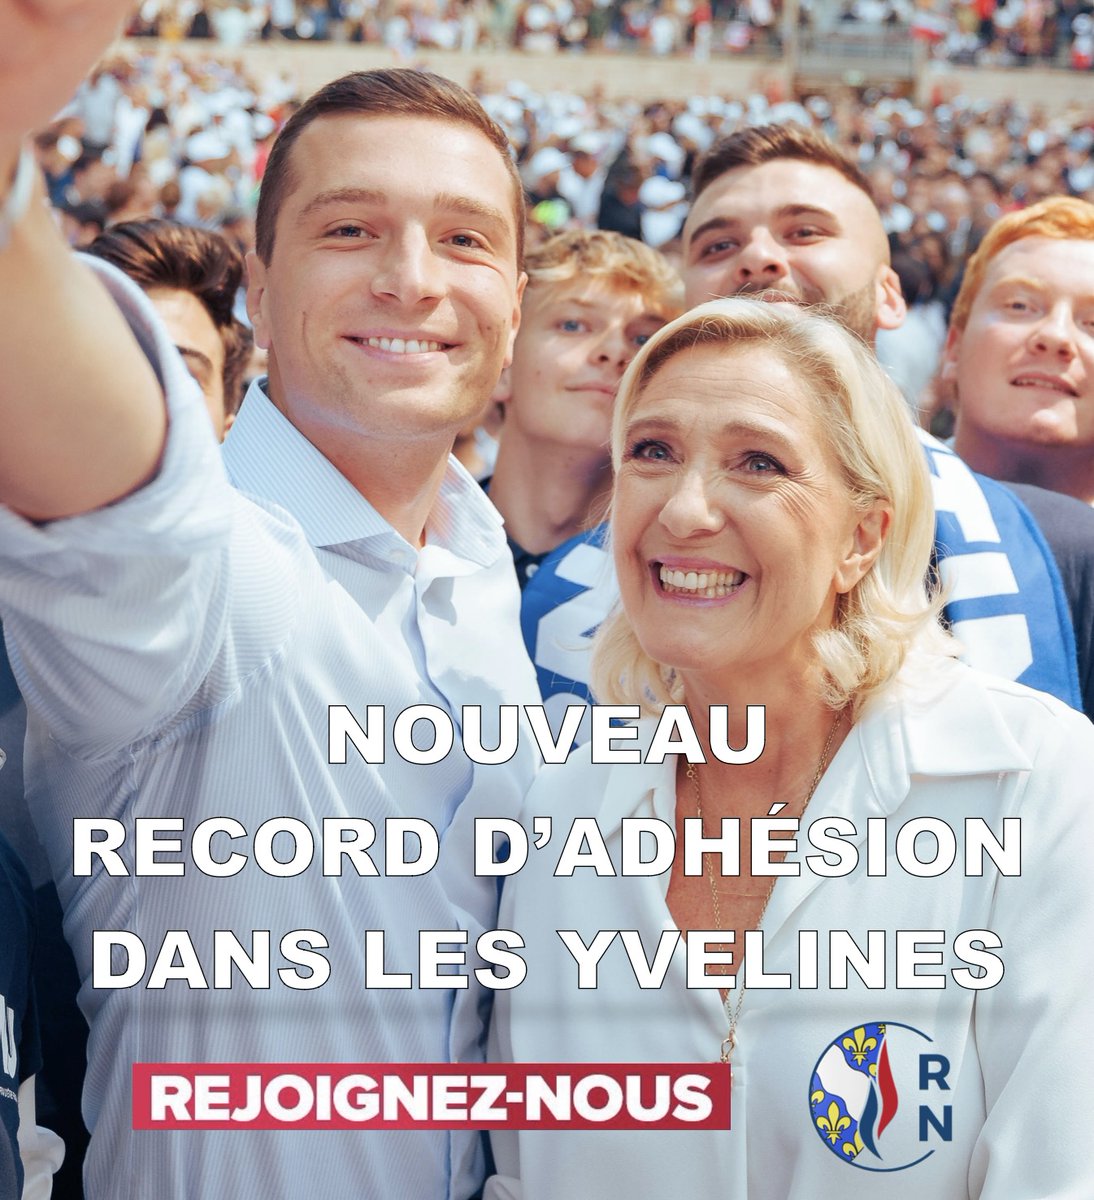 🚨Incroyable dynamique autour du @RNational_off avec @MLP_officiel et @J_Bardella : nouveau record absolu d'adhésion cette semaine dans les Yvelines ! Rejoignez-nous : adhesions.rassemblementnational.fr #VivementLe9Juin